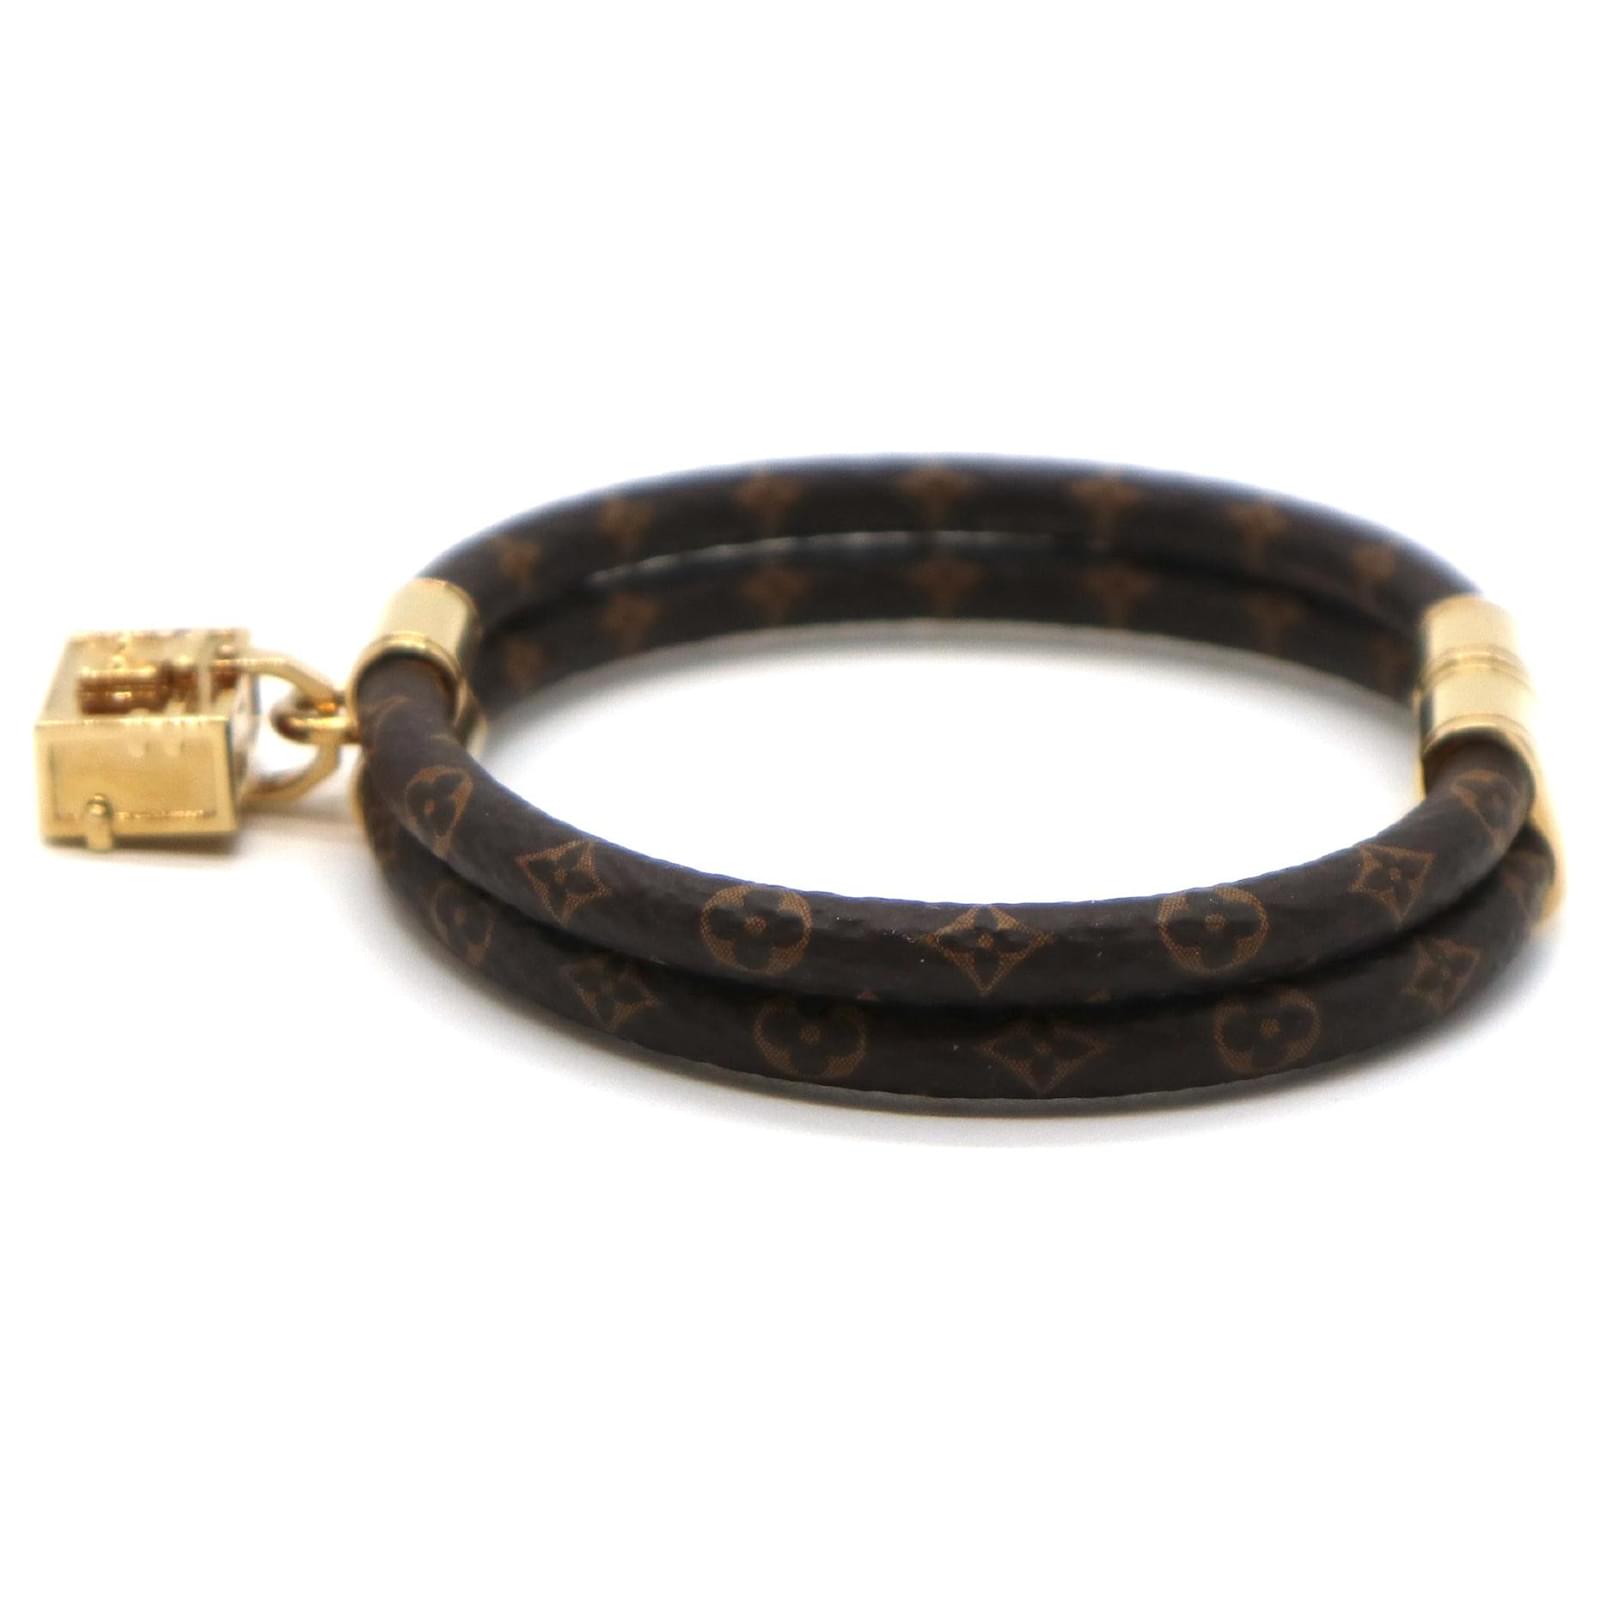 louisvuitton Keep it Twice Monogram Bracelet. Size 19. Worn few